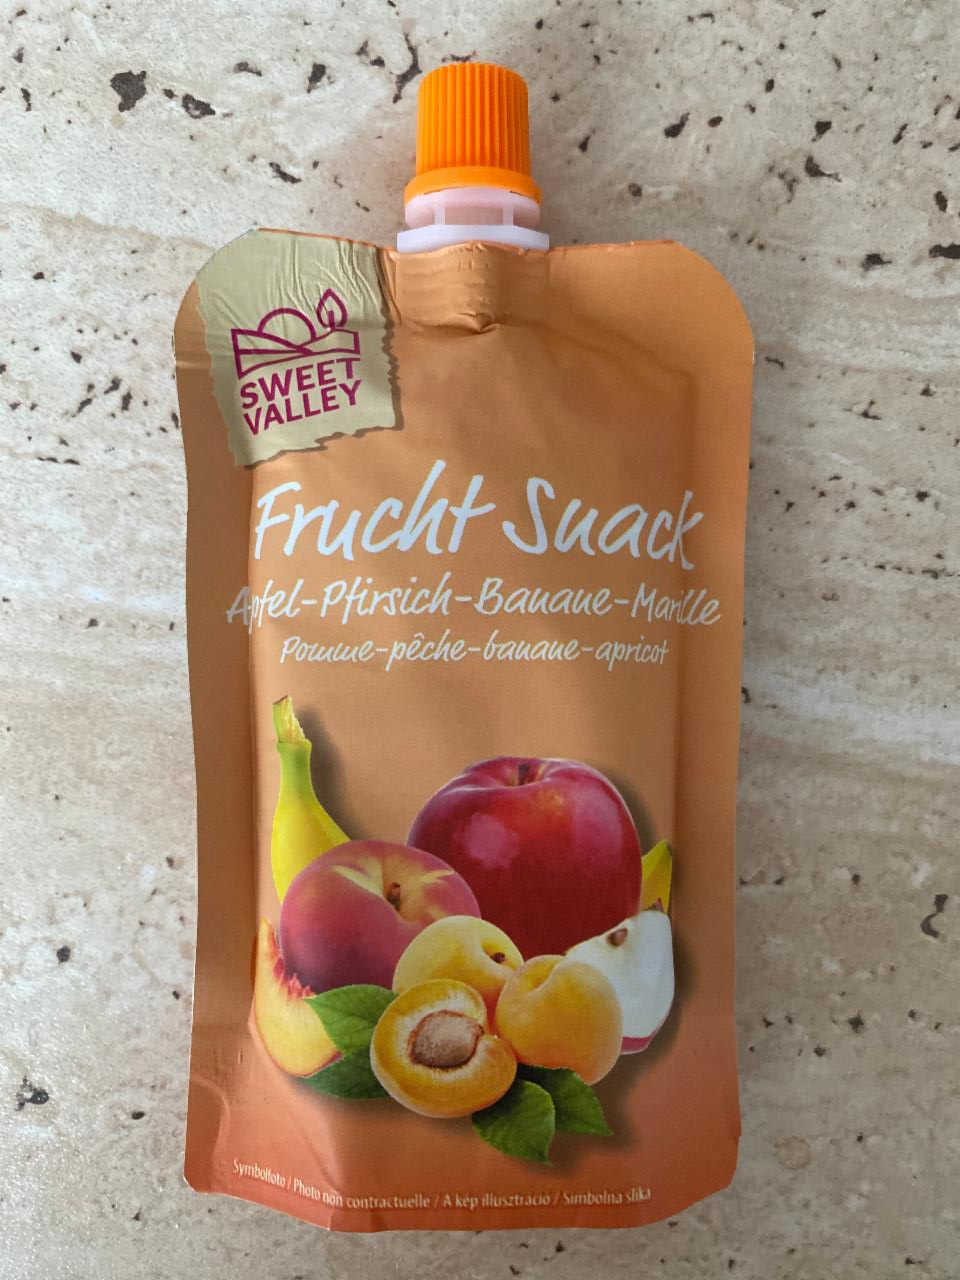 Képek - Frucht snack Apfe-Pfirsich-Banane-Marille Sweet valley